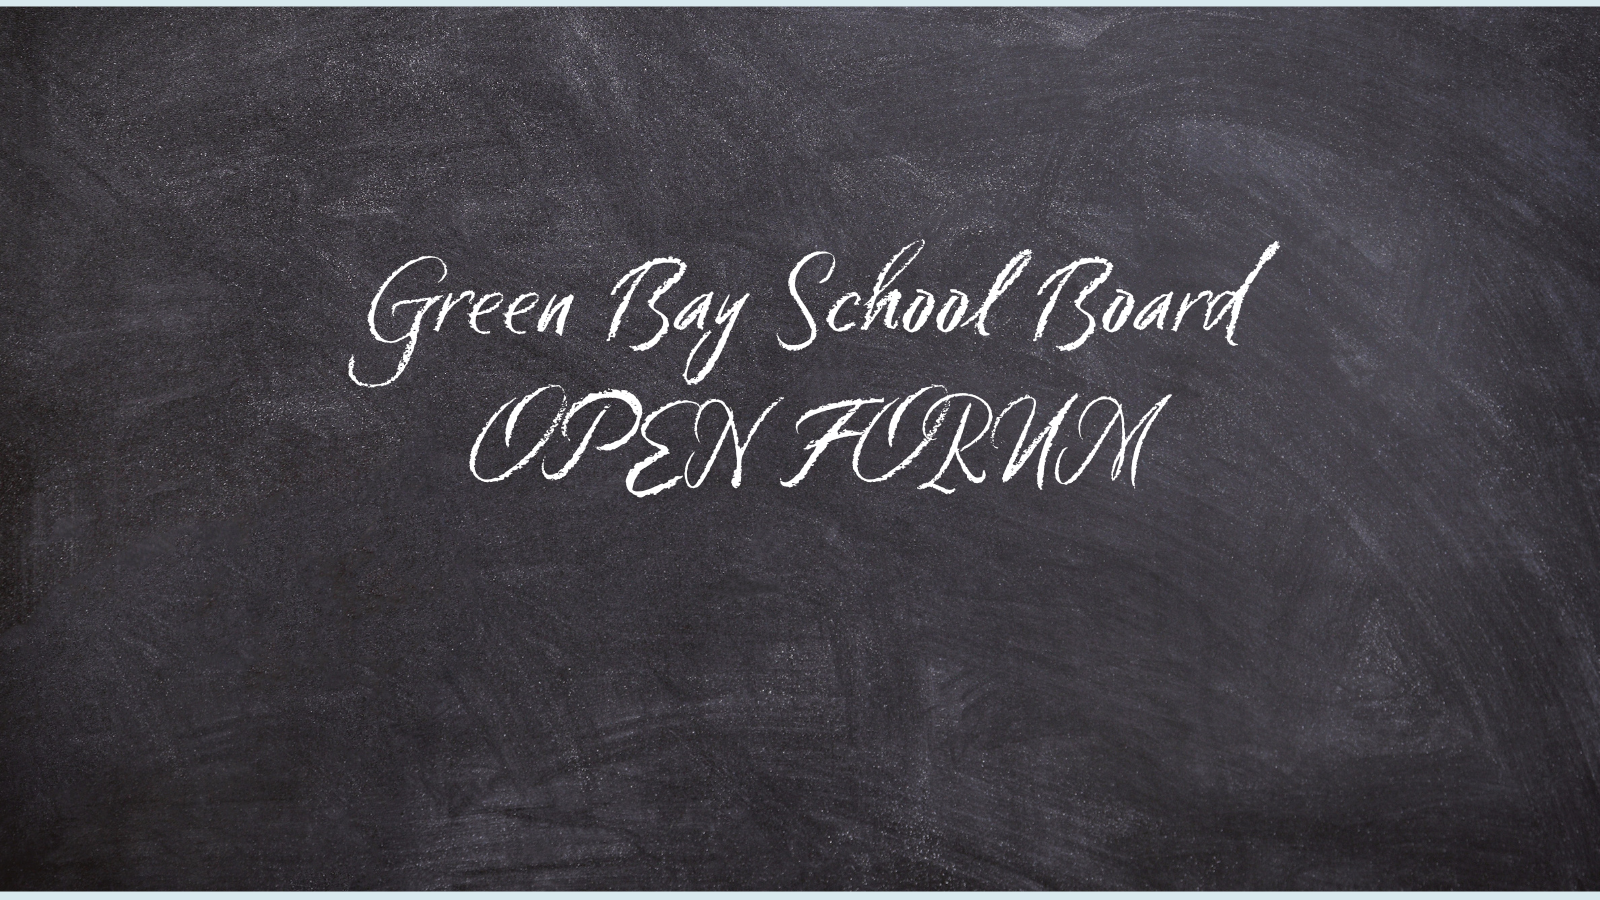 Community addresses Green Bay School Board in open forum